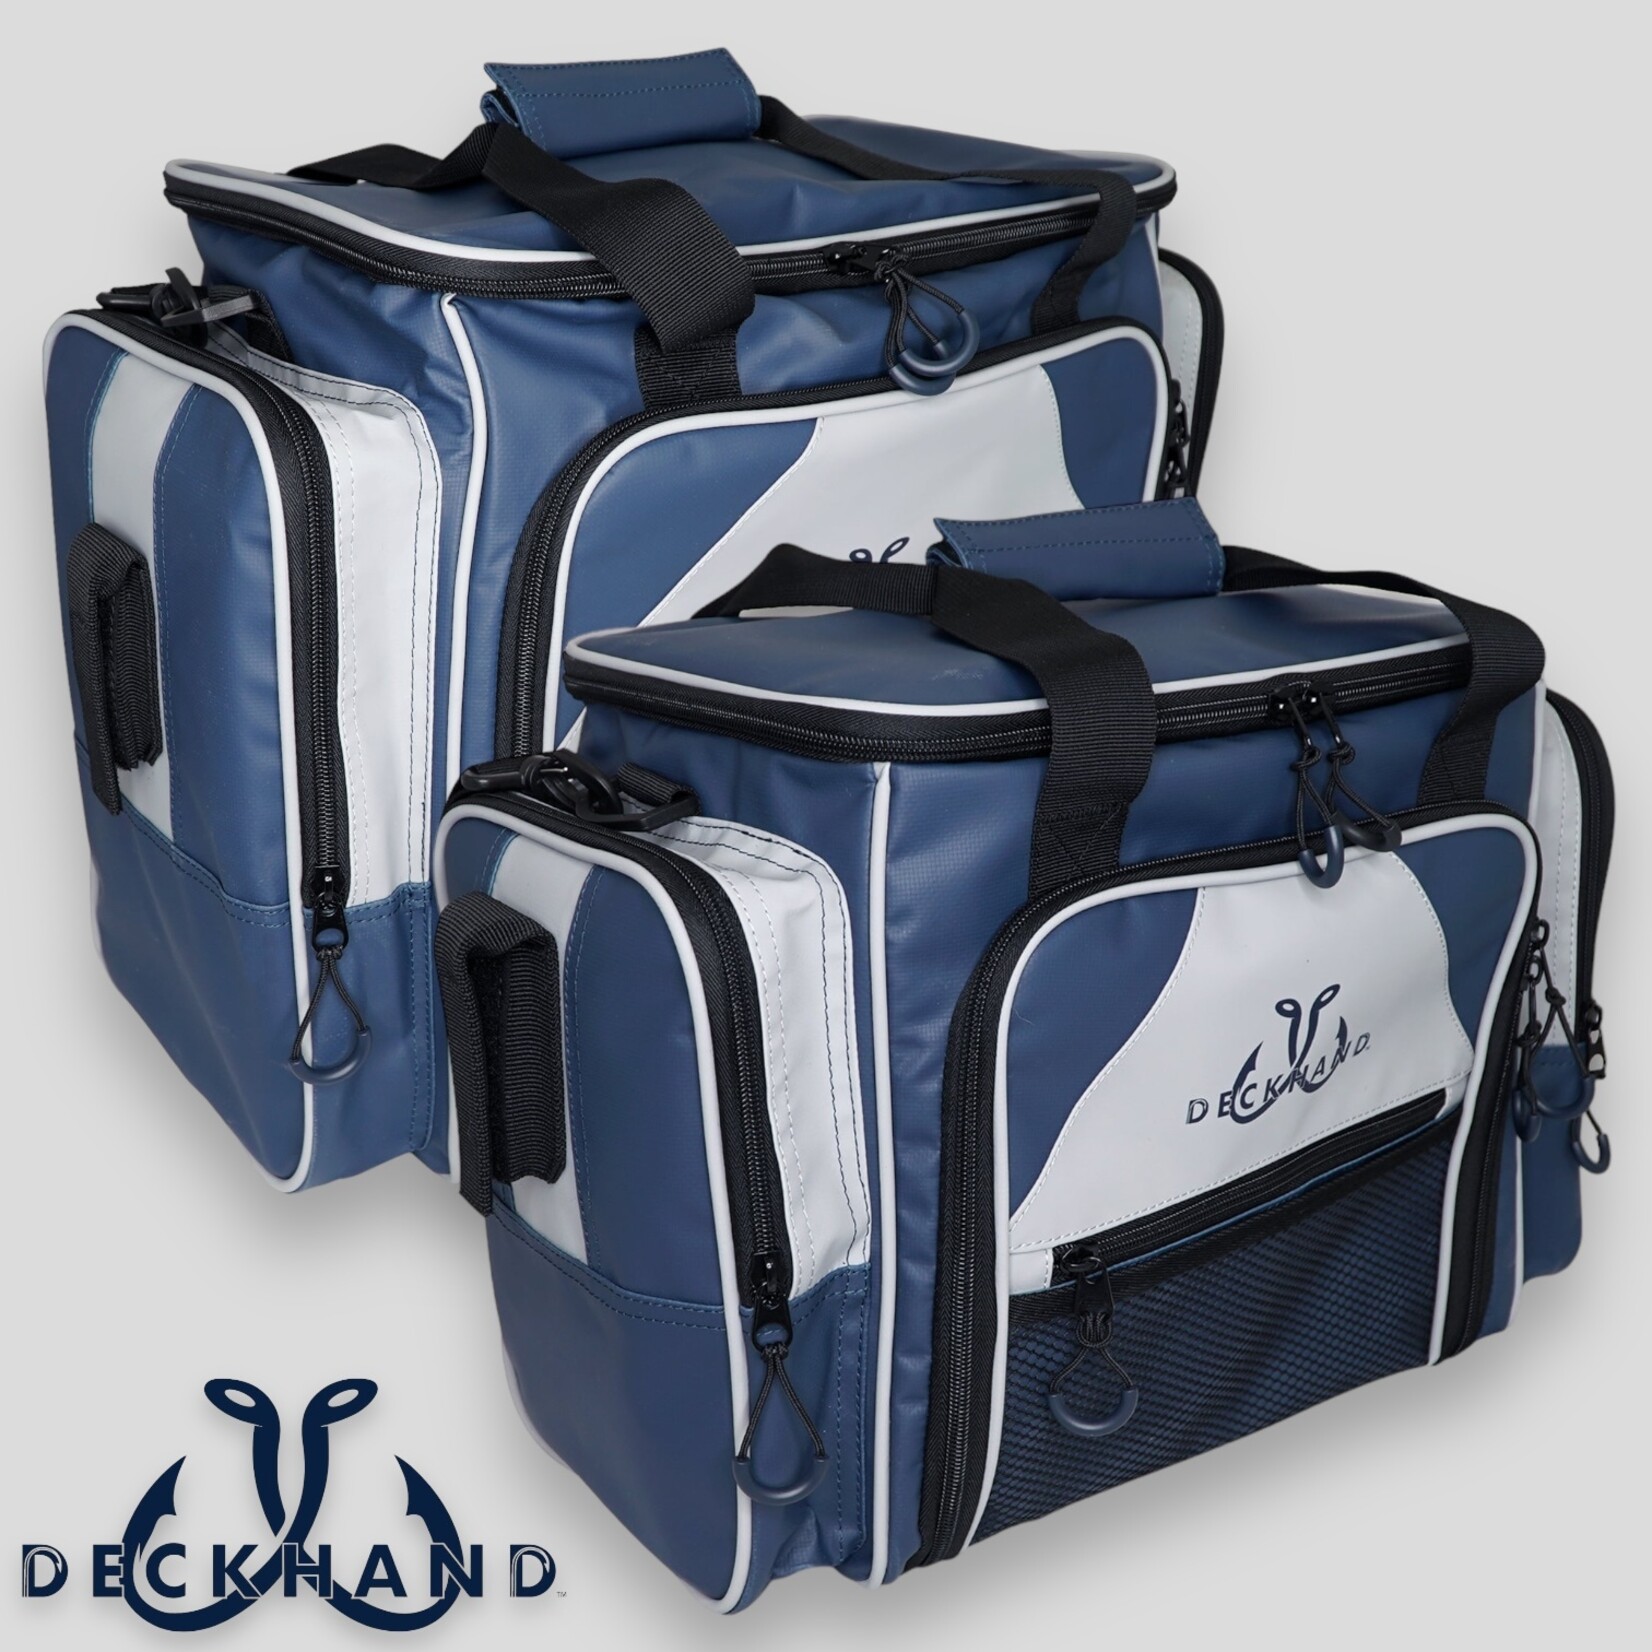 Deckhand Sports Deckhand Sports Tackle Bag